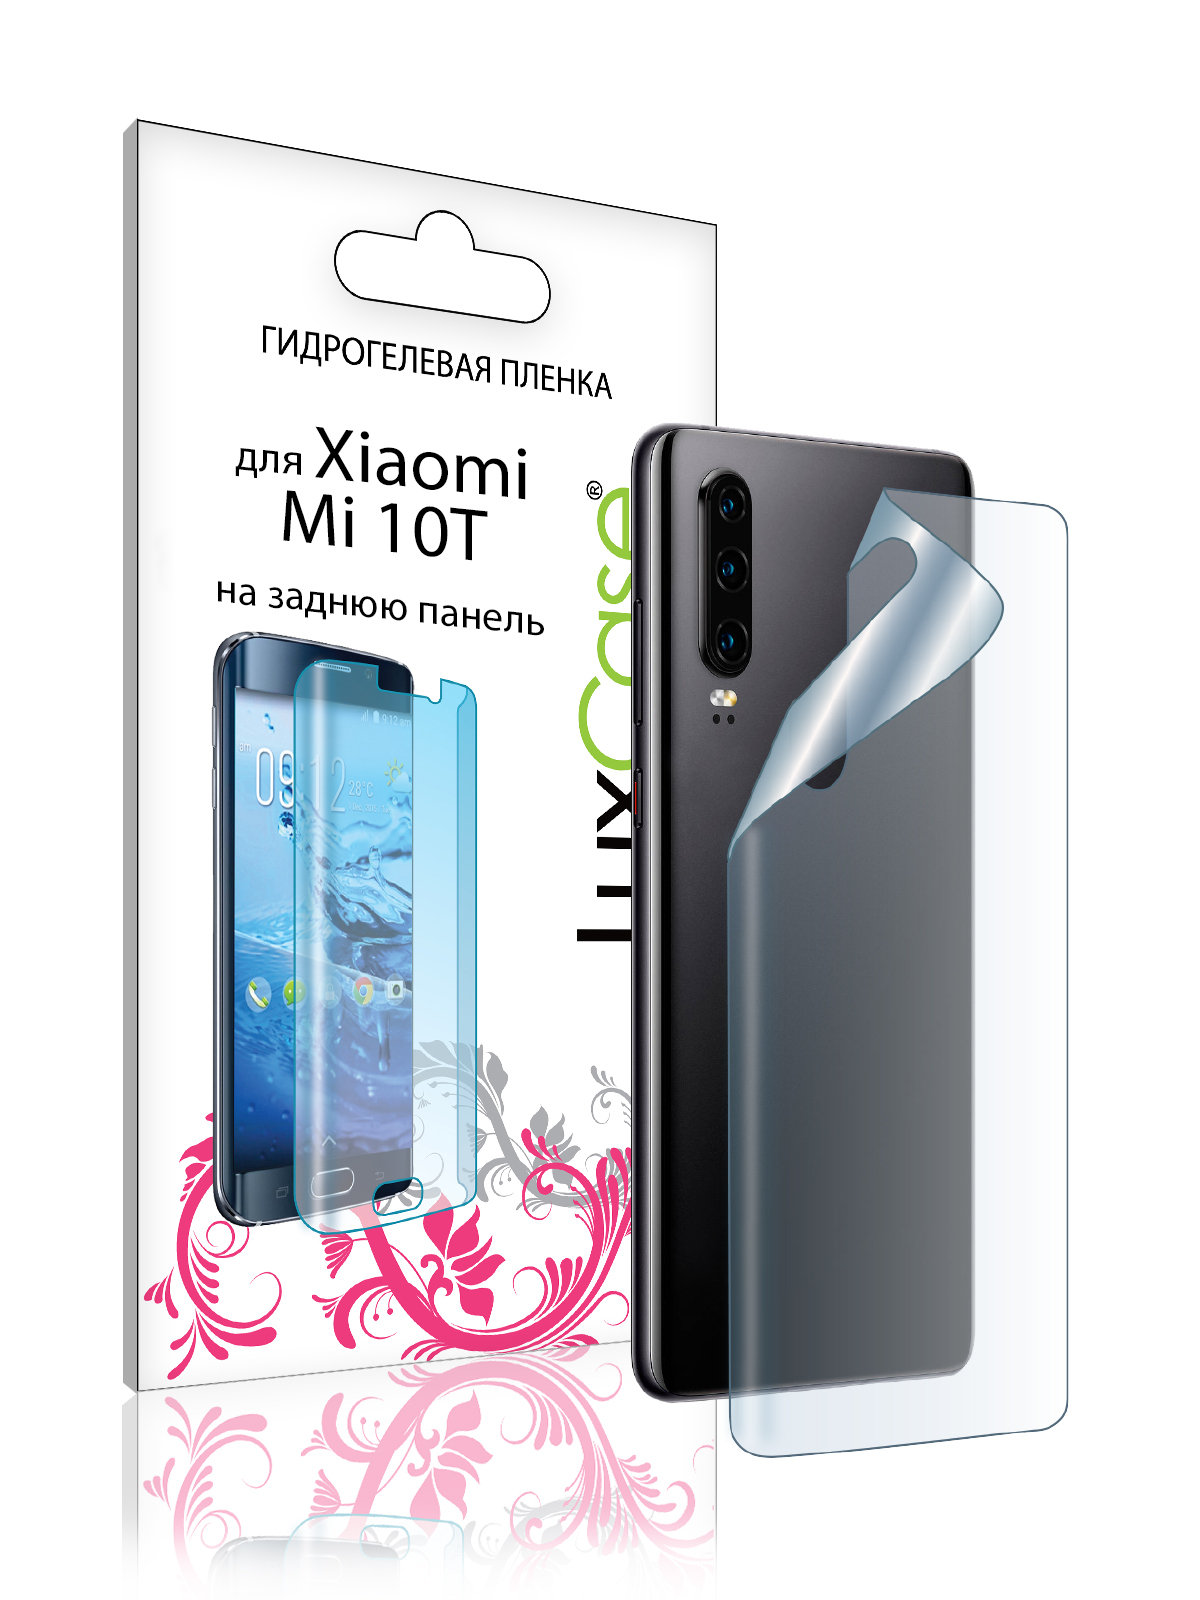 гидрогелевая пленка luxcase для xiaomi mi 10t 0 14mm back transperent 86701 Пленка на заднюю панель LuxCase для Xiaomi Mi 10T 0.14mm Transperent 86701